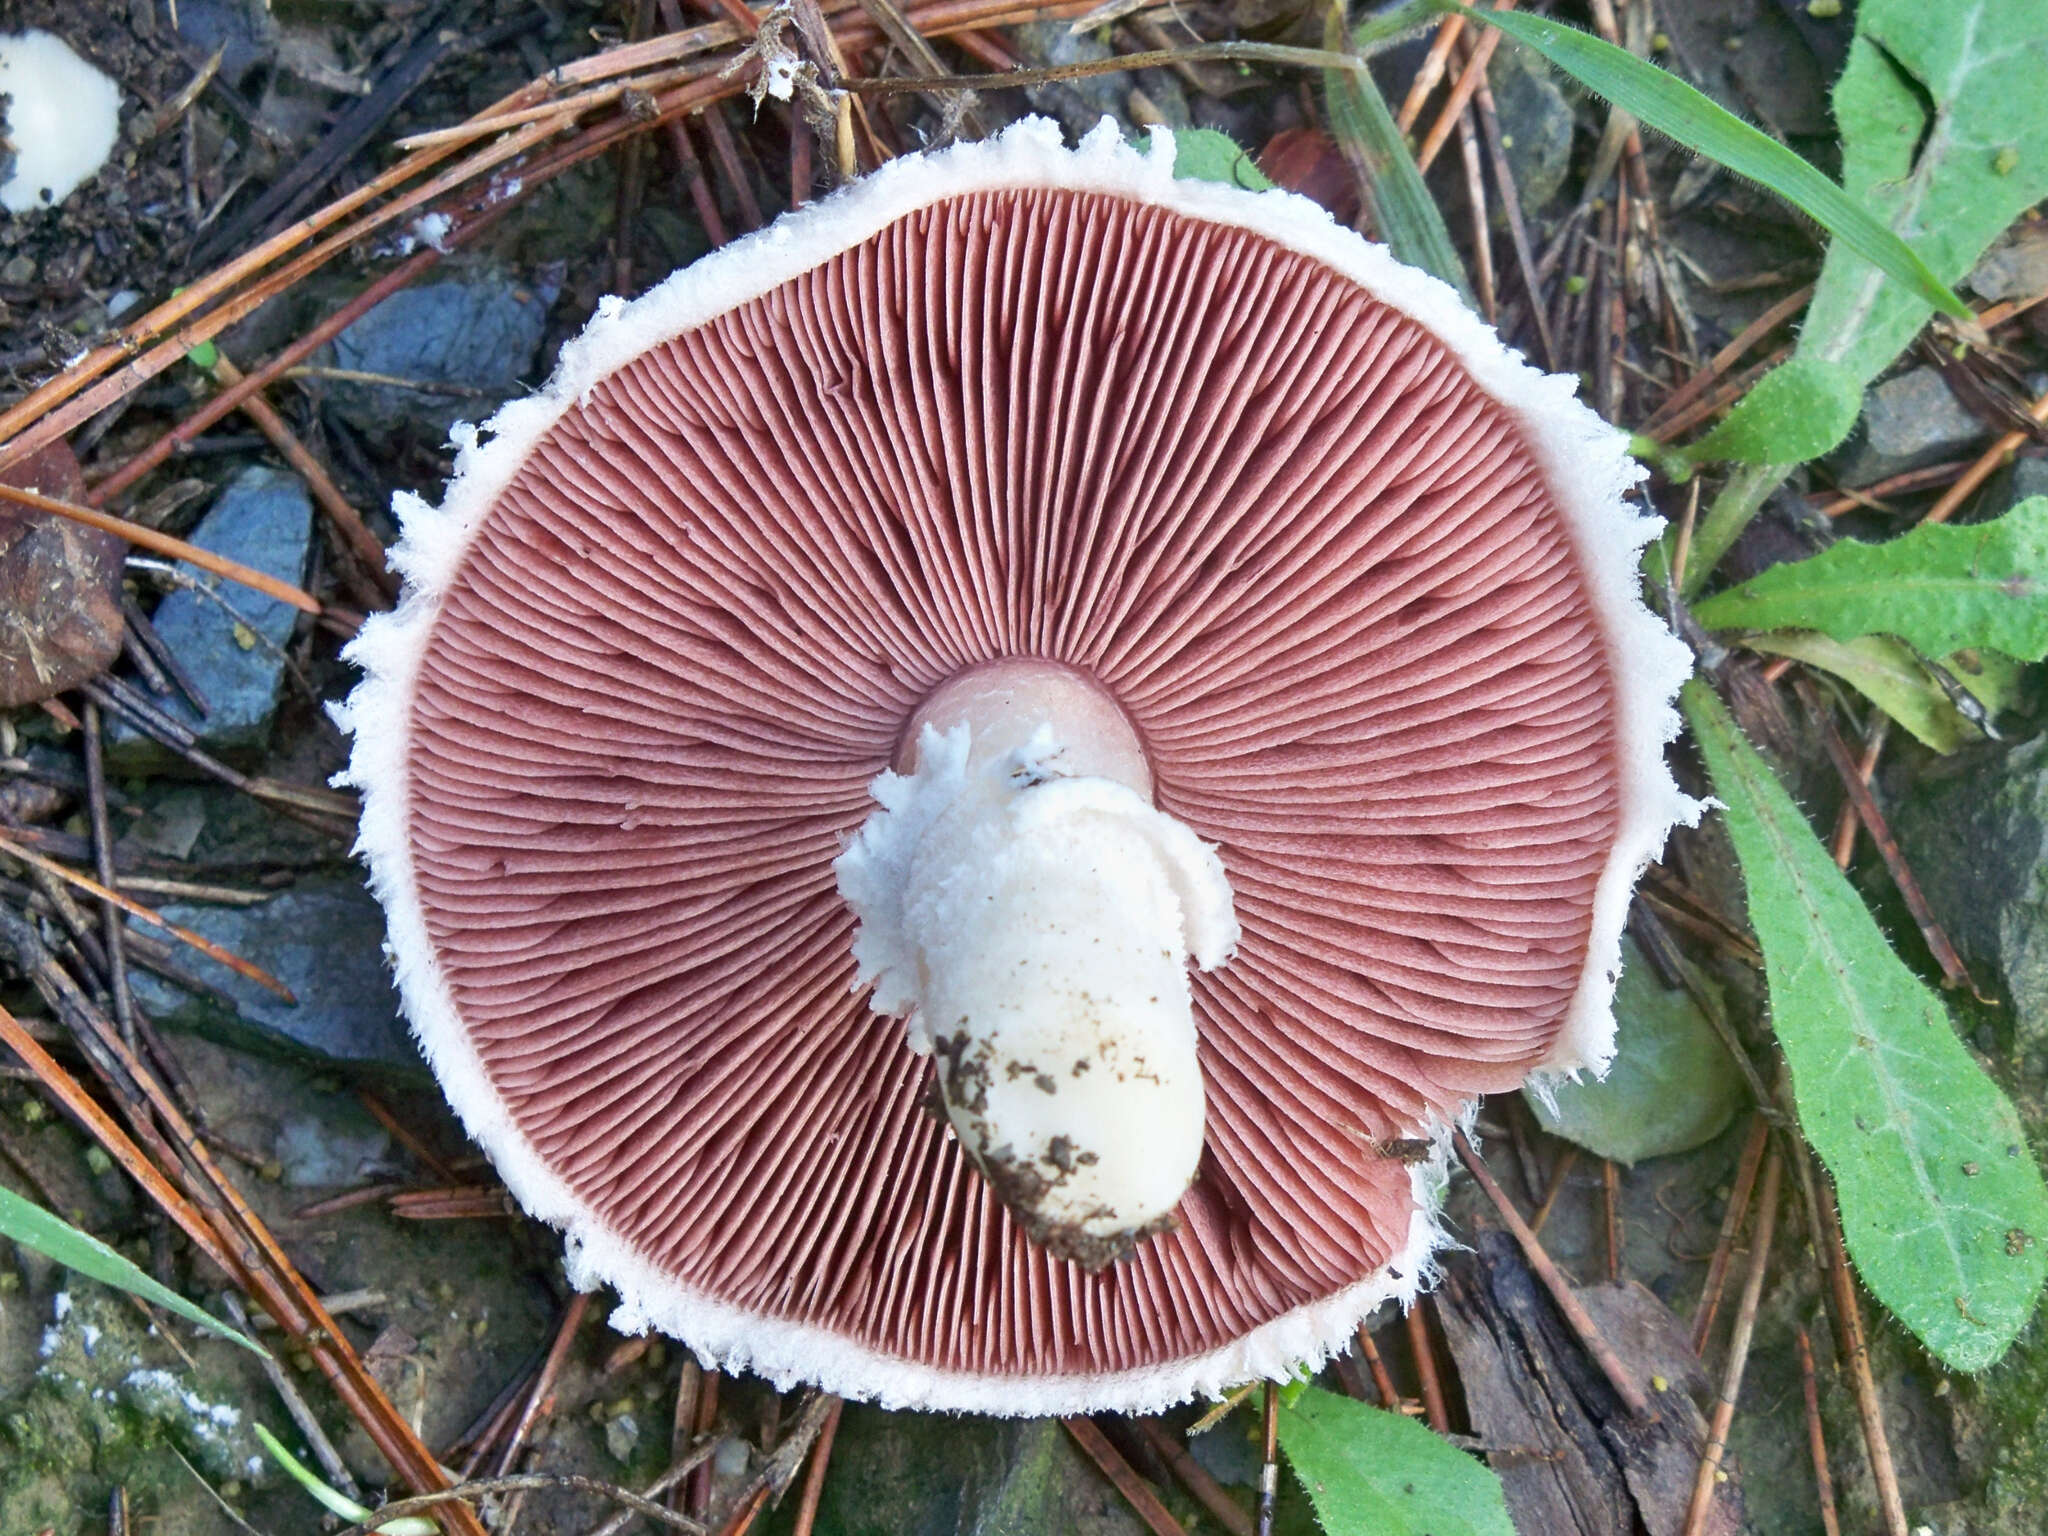 Image of Field Mushroom